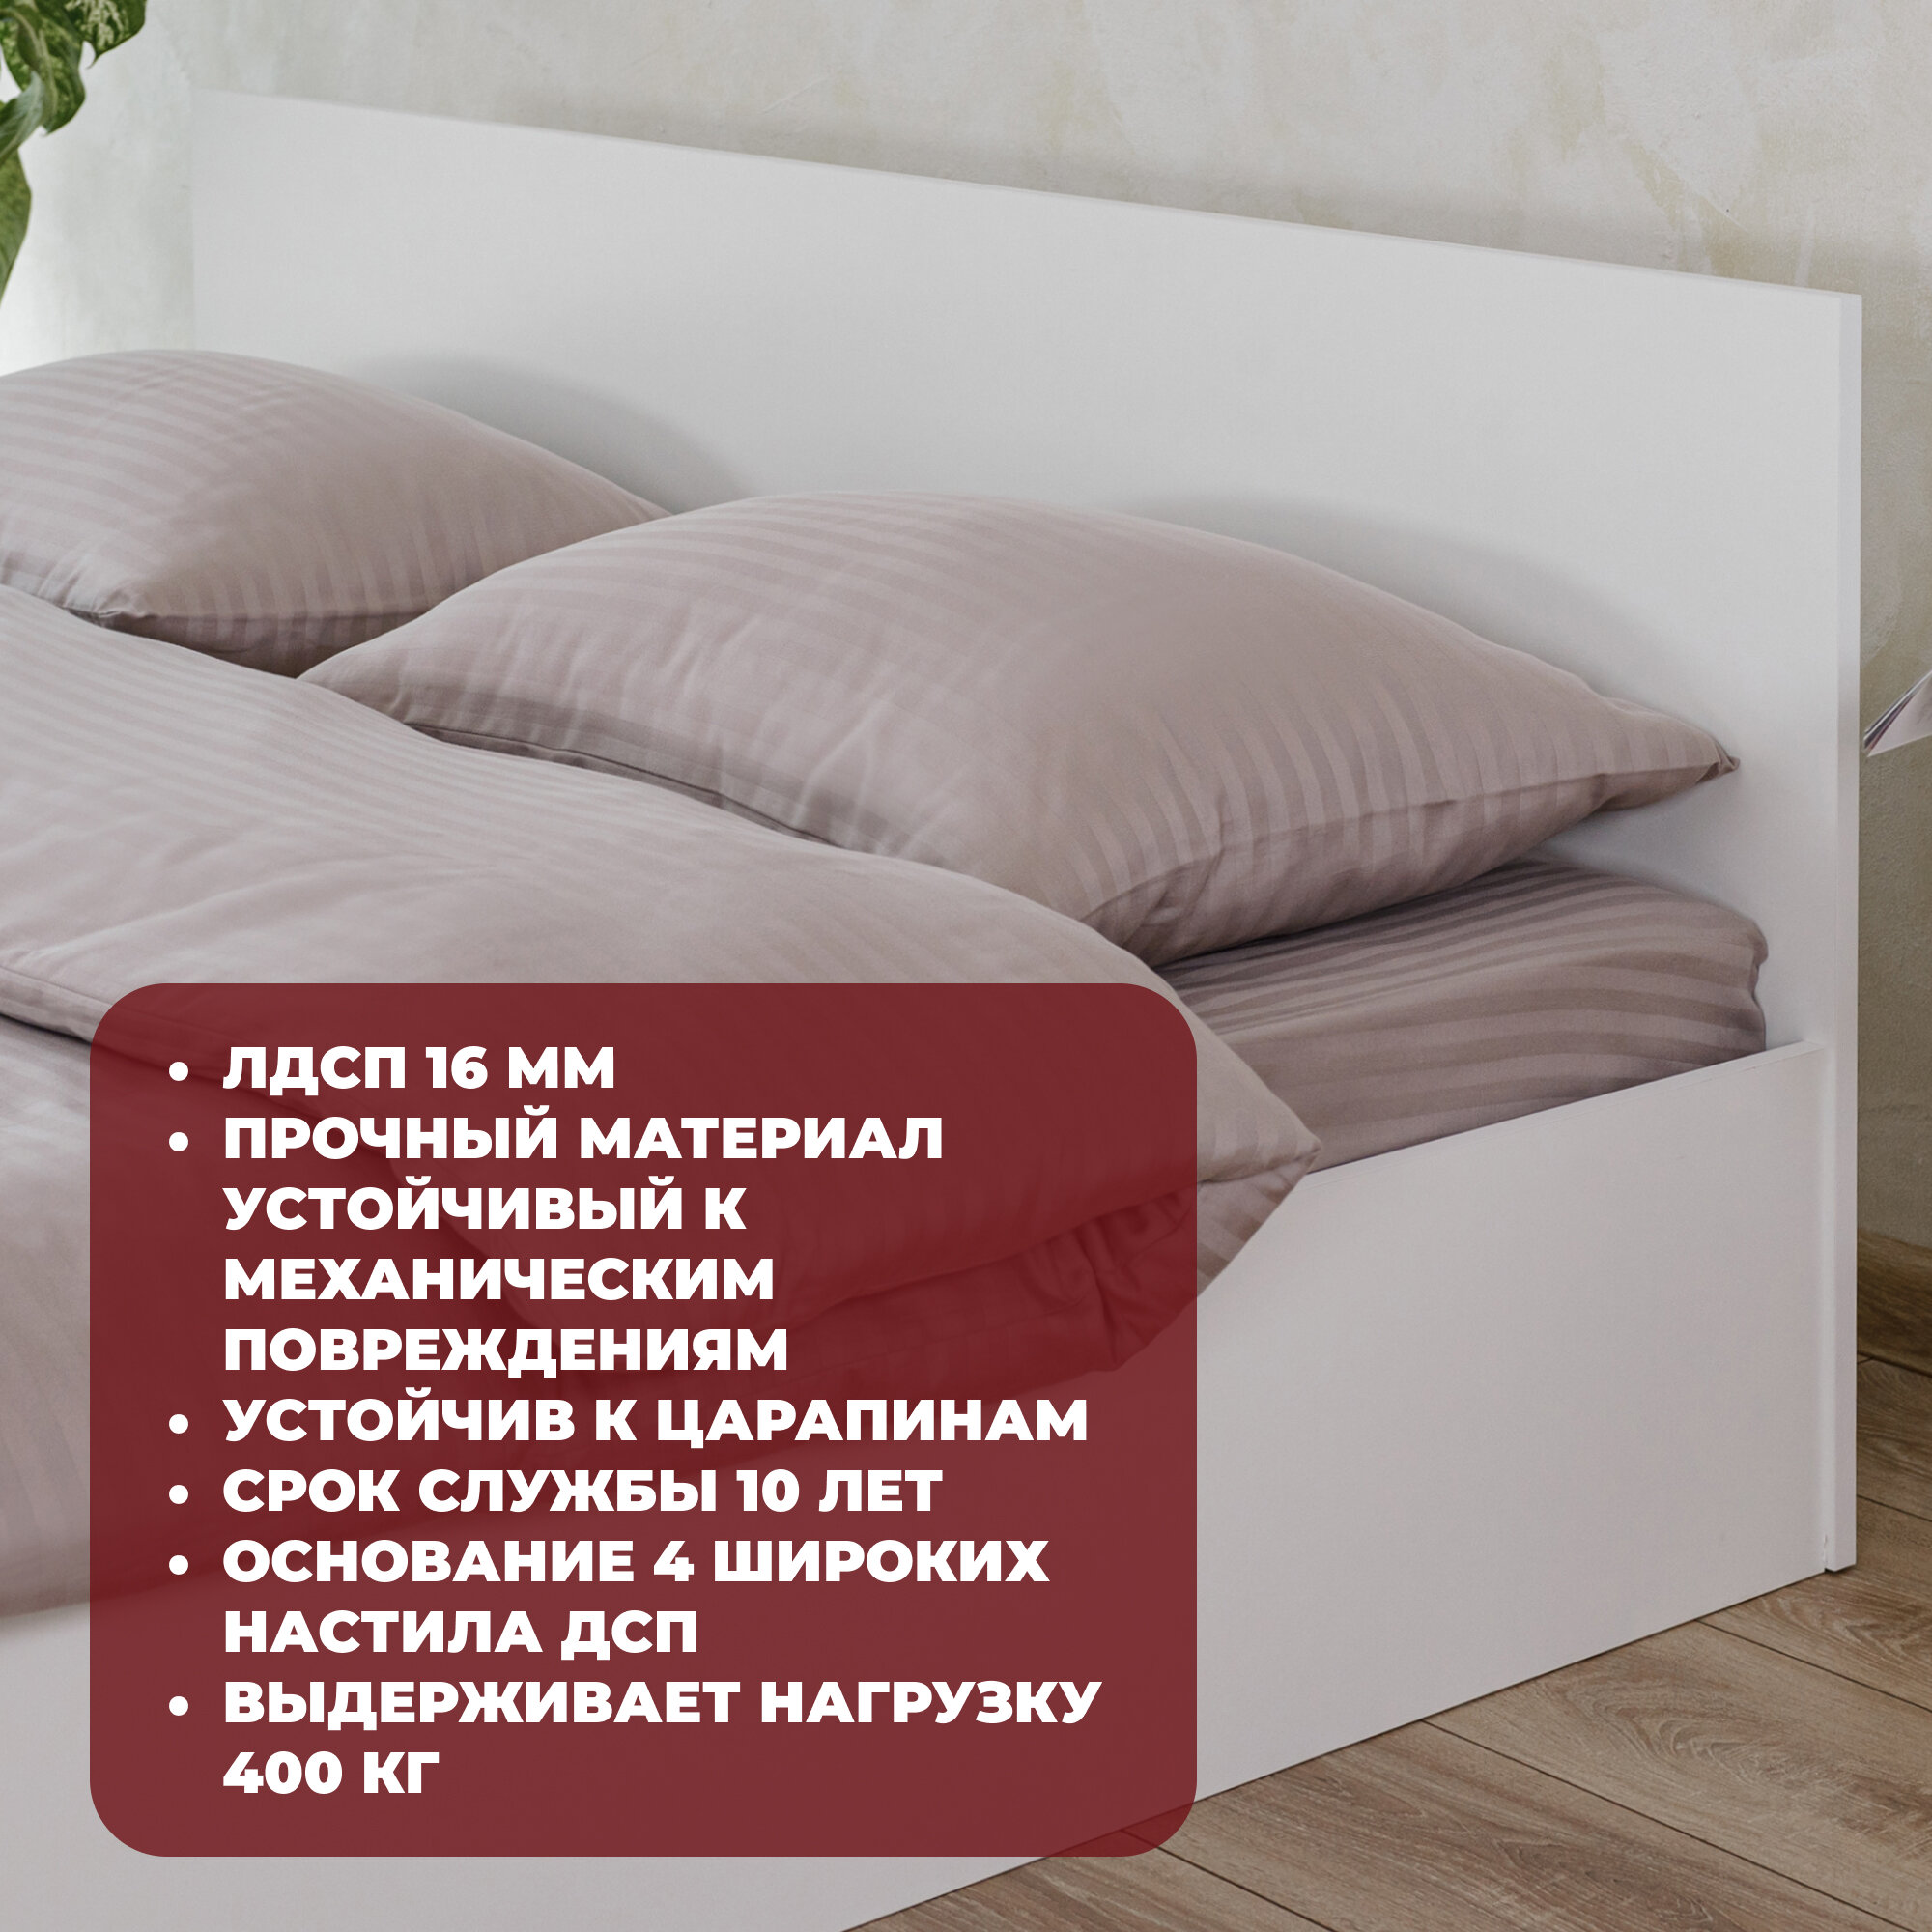 Двуспальная кровать Милена Белая с матрасом Лайт, 140х200 см